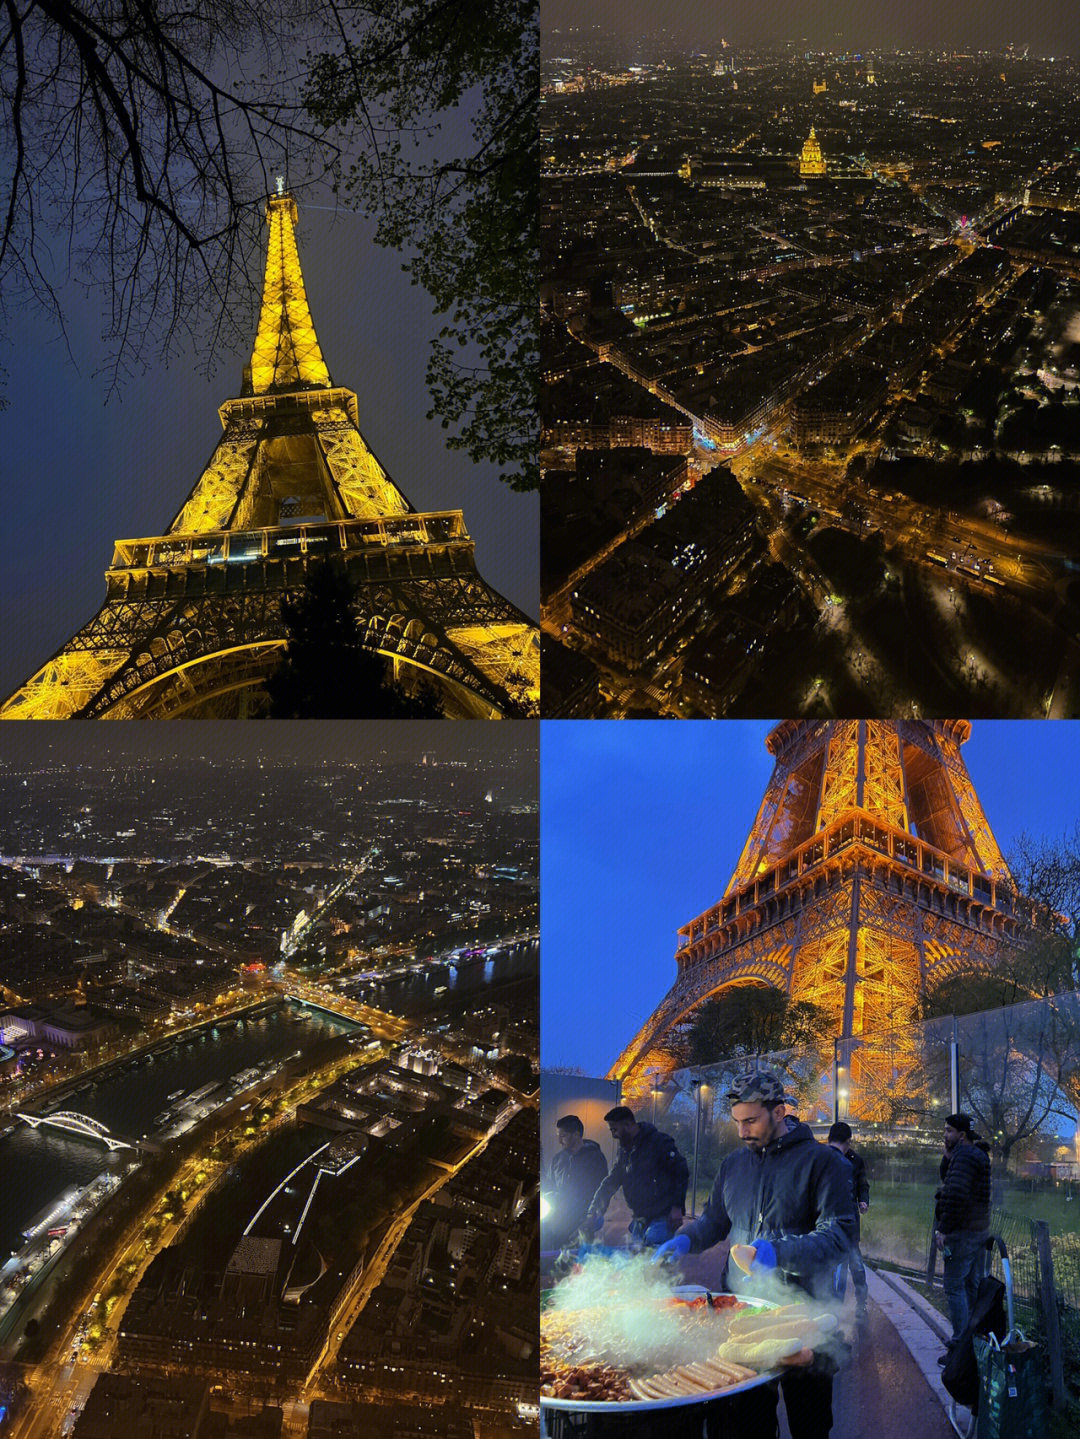 巴黎淋了一天雨,趁着雨停了赶紧去看铁塔,在绝美埃菲尔铁塔夜景下没有